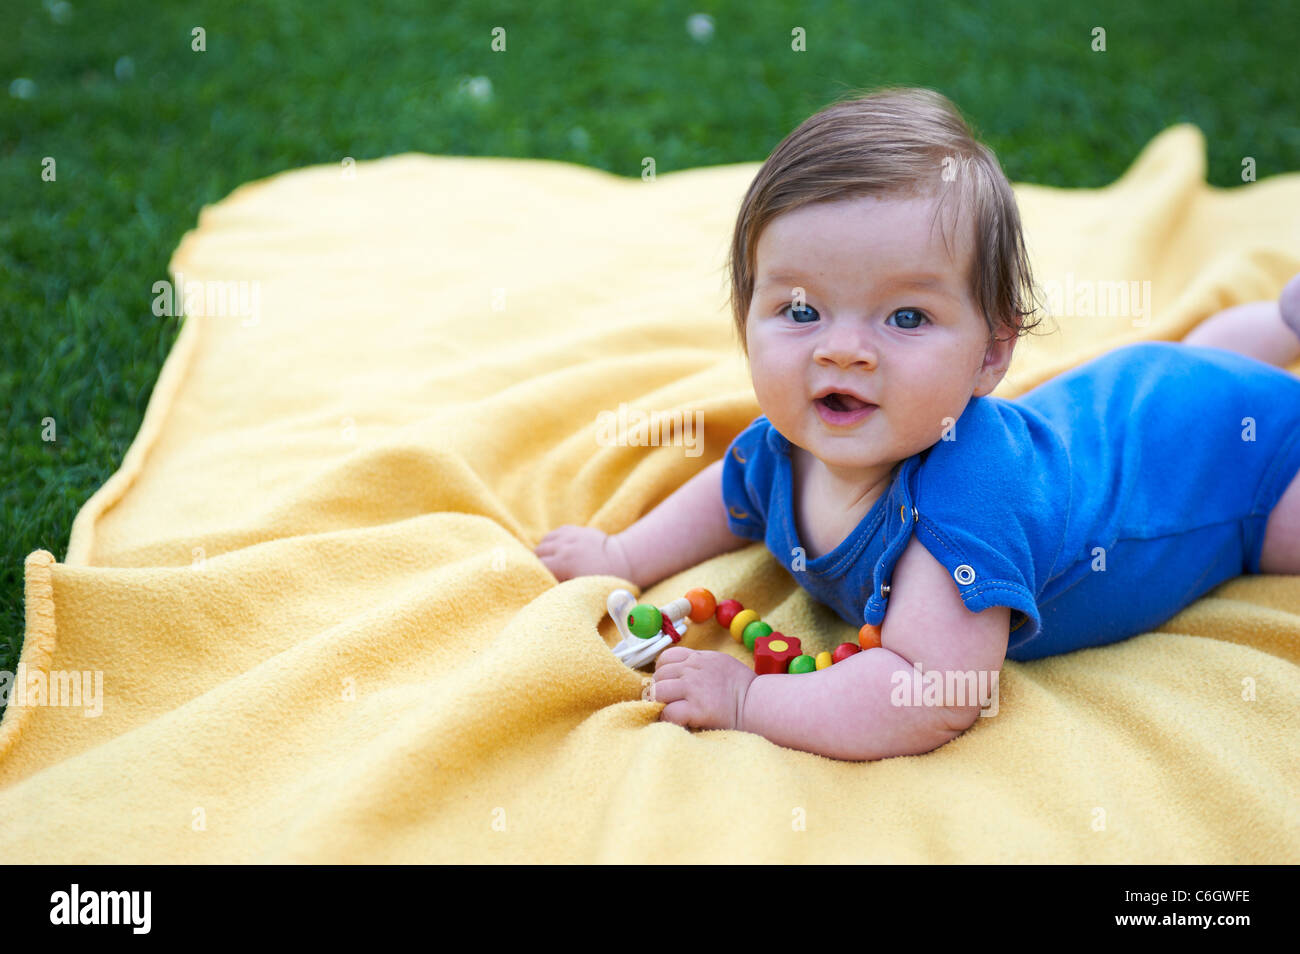 Porträt von kleines Kind Mädchen auf gelben Decke im grünen Rasen außerhalb liegend Stockfoto